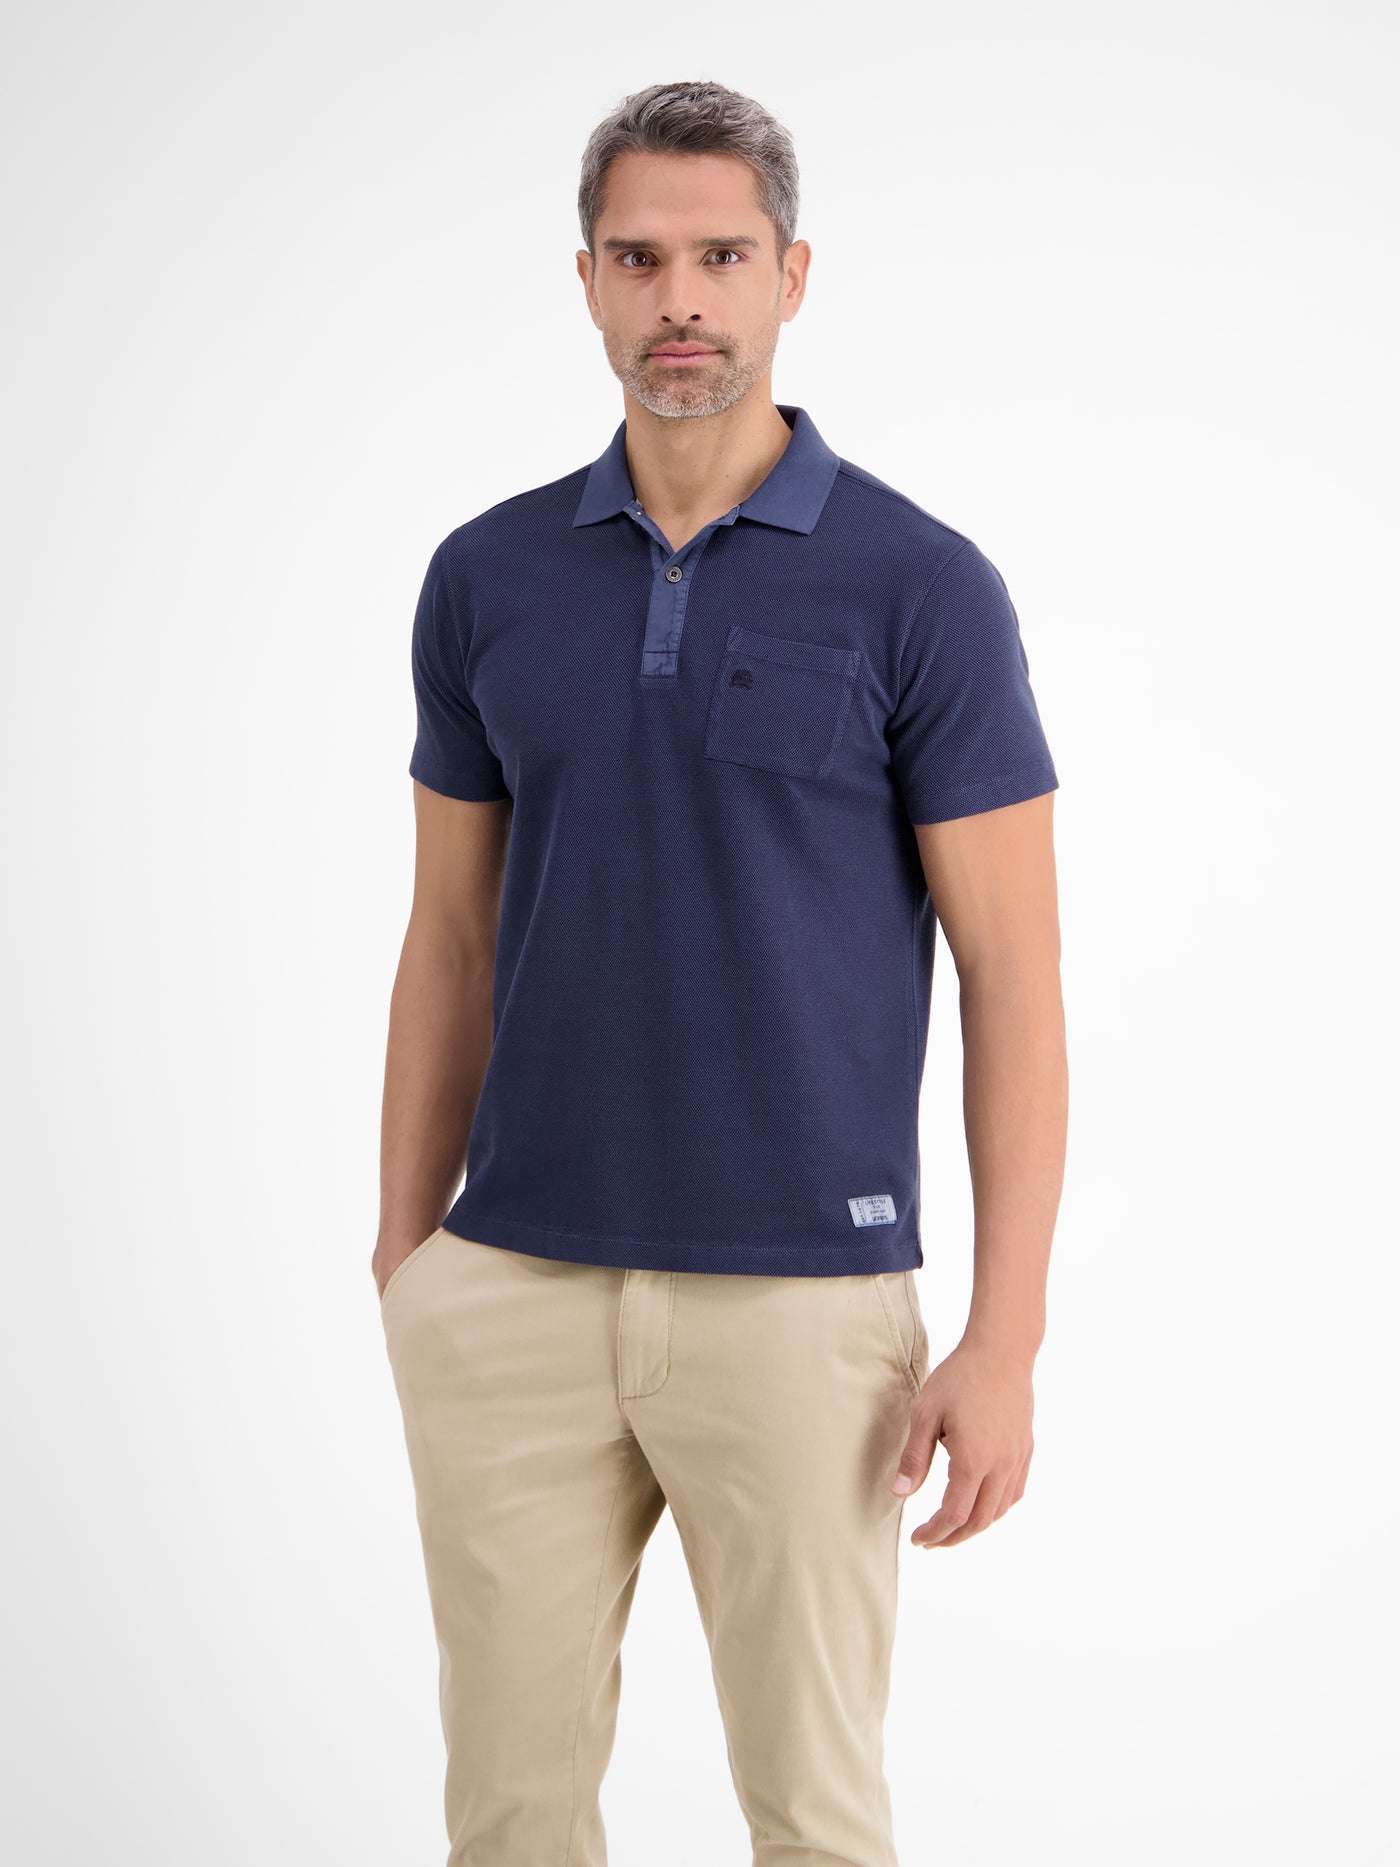 Polo shirt – two-tone SHOP LERROS piqué in